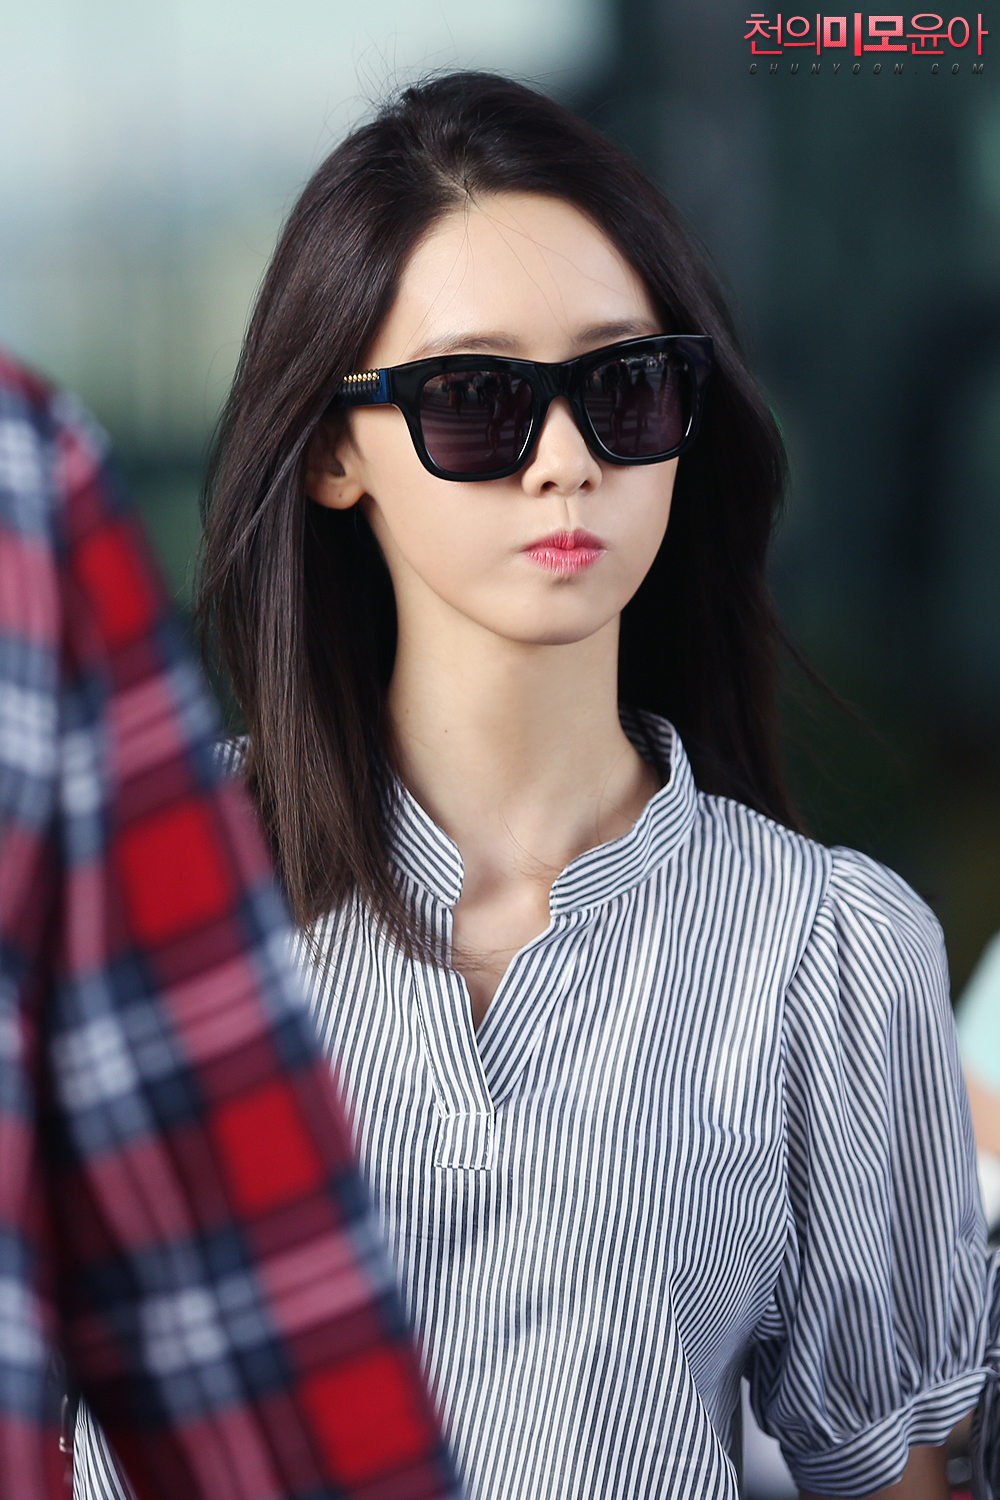 [PIC][07-07-2016]YoonA trở về Hàn Quốc vào chiều nay 2sHUy6QXFj